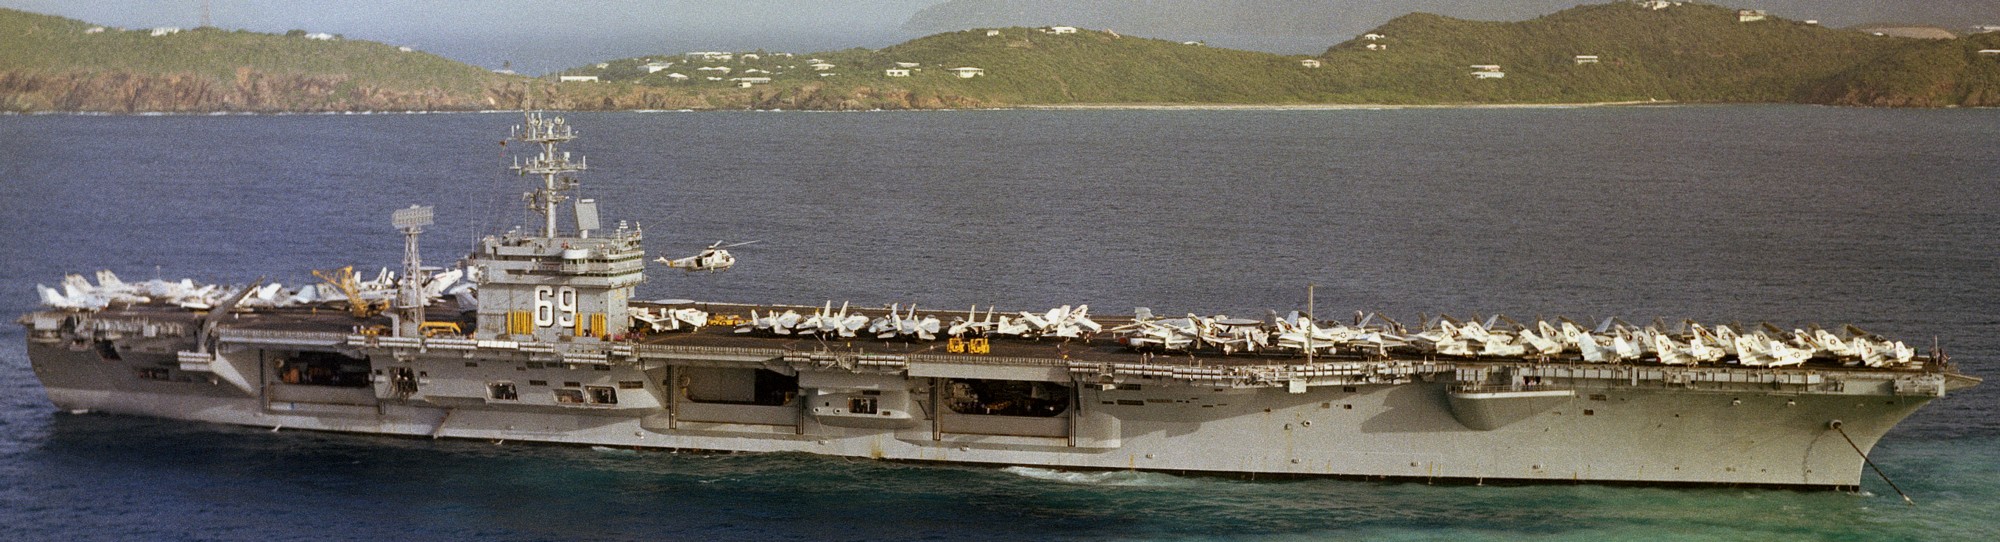 cvn-69 uss dwight d. eisenhower aircraft carrier air wing cvw-7 us navy 244